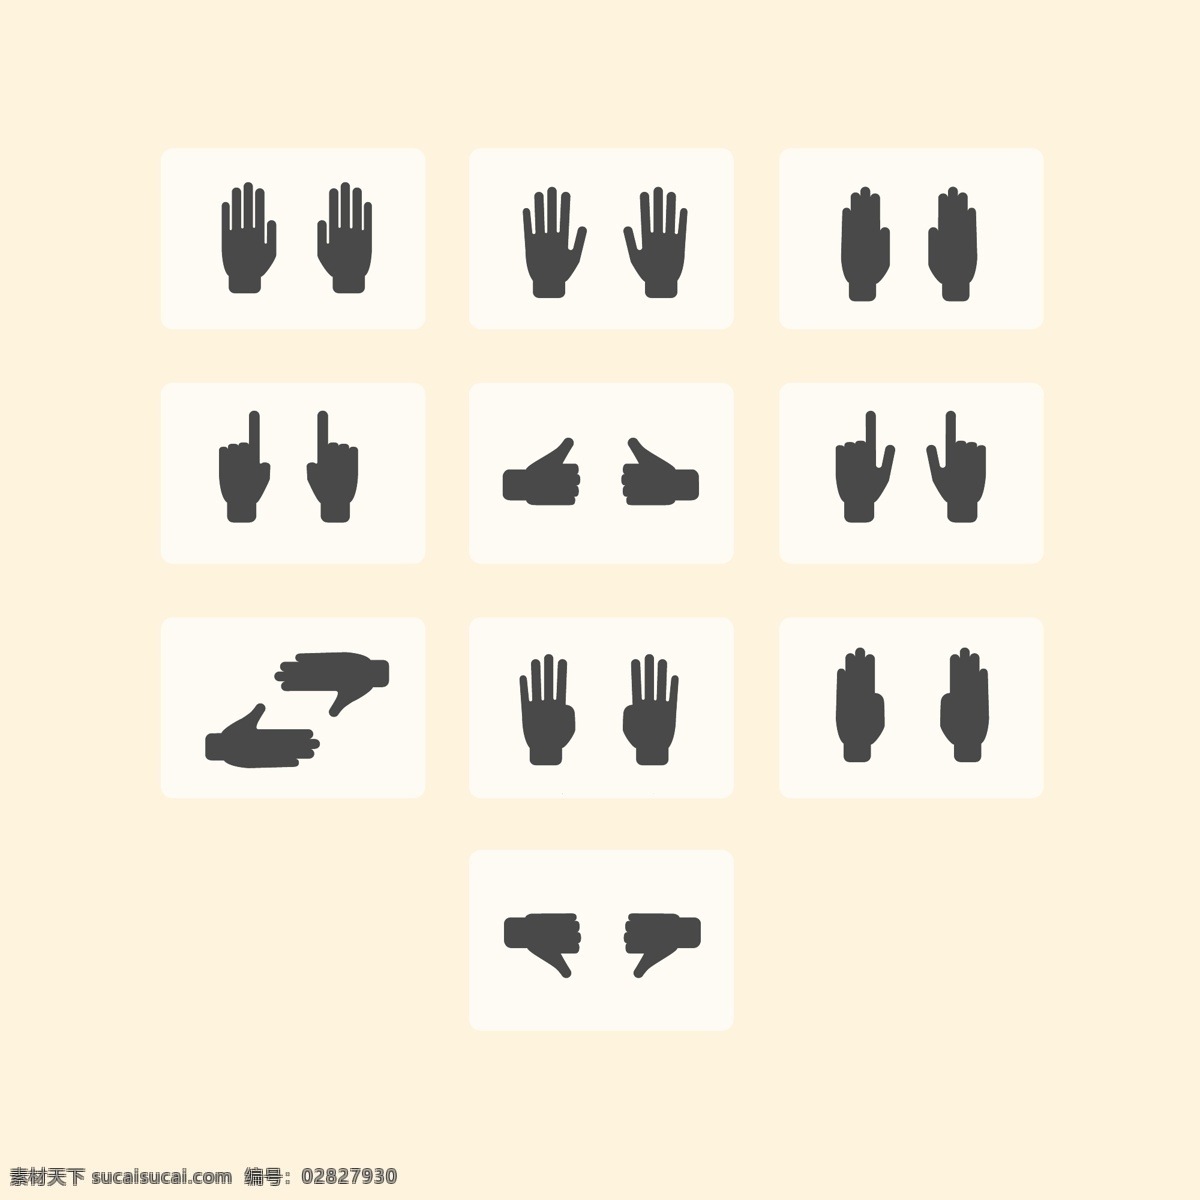 手图标剪影 手 图标 设置 剪影 人 符号 标志 手势 集合 最新矢量素材